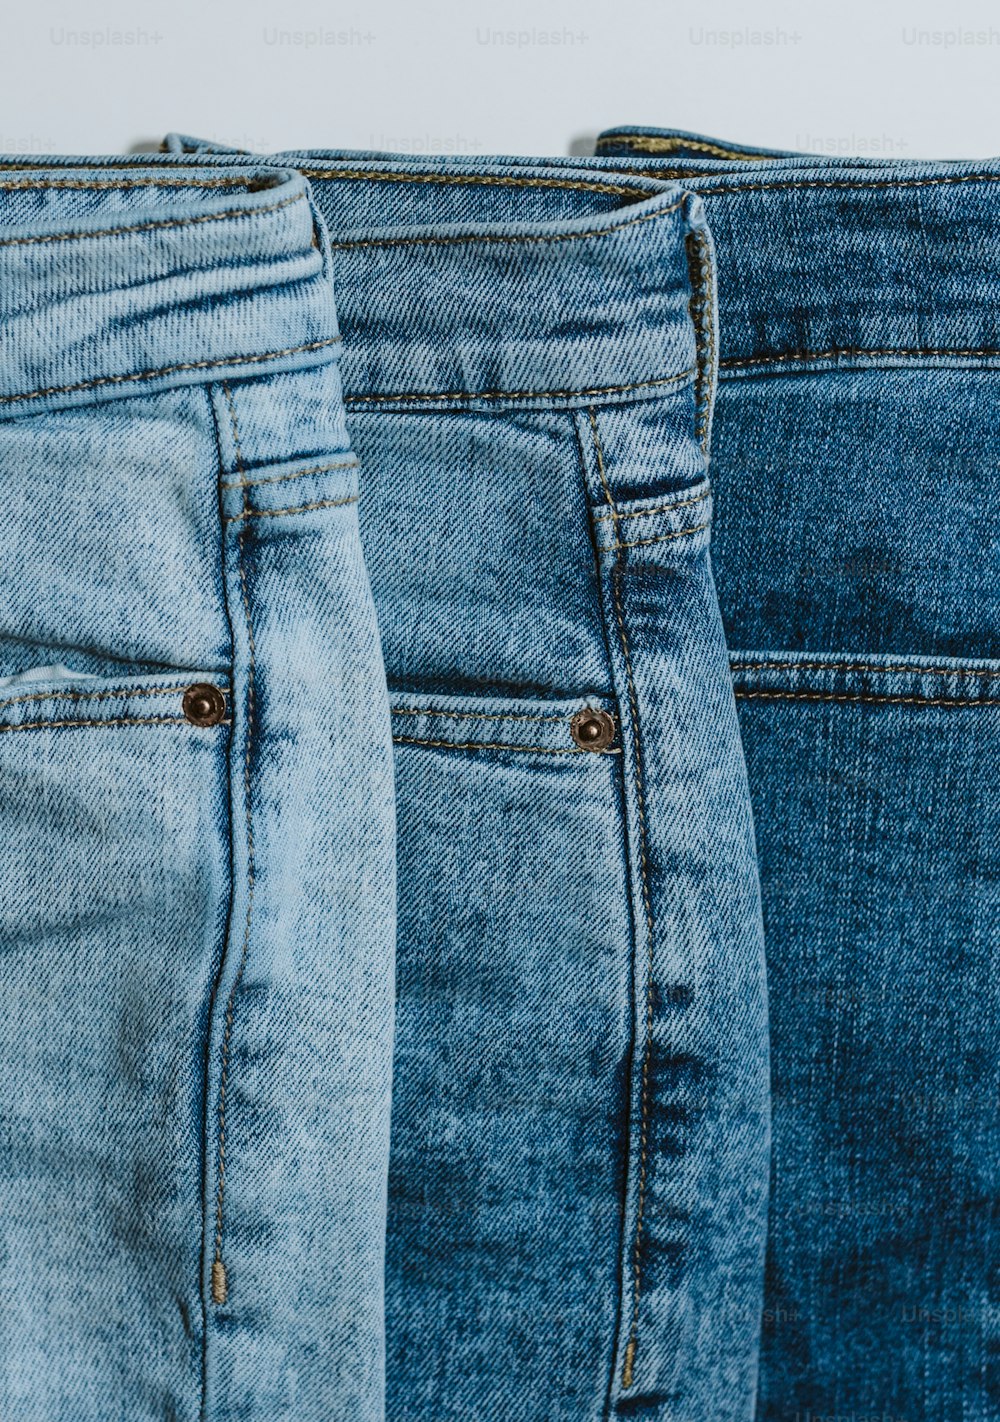 três pares de jeans estão alinhados em uma fileira